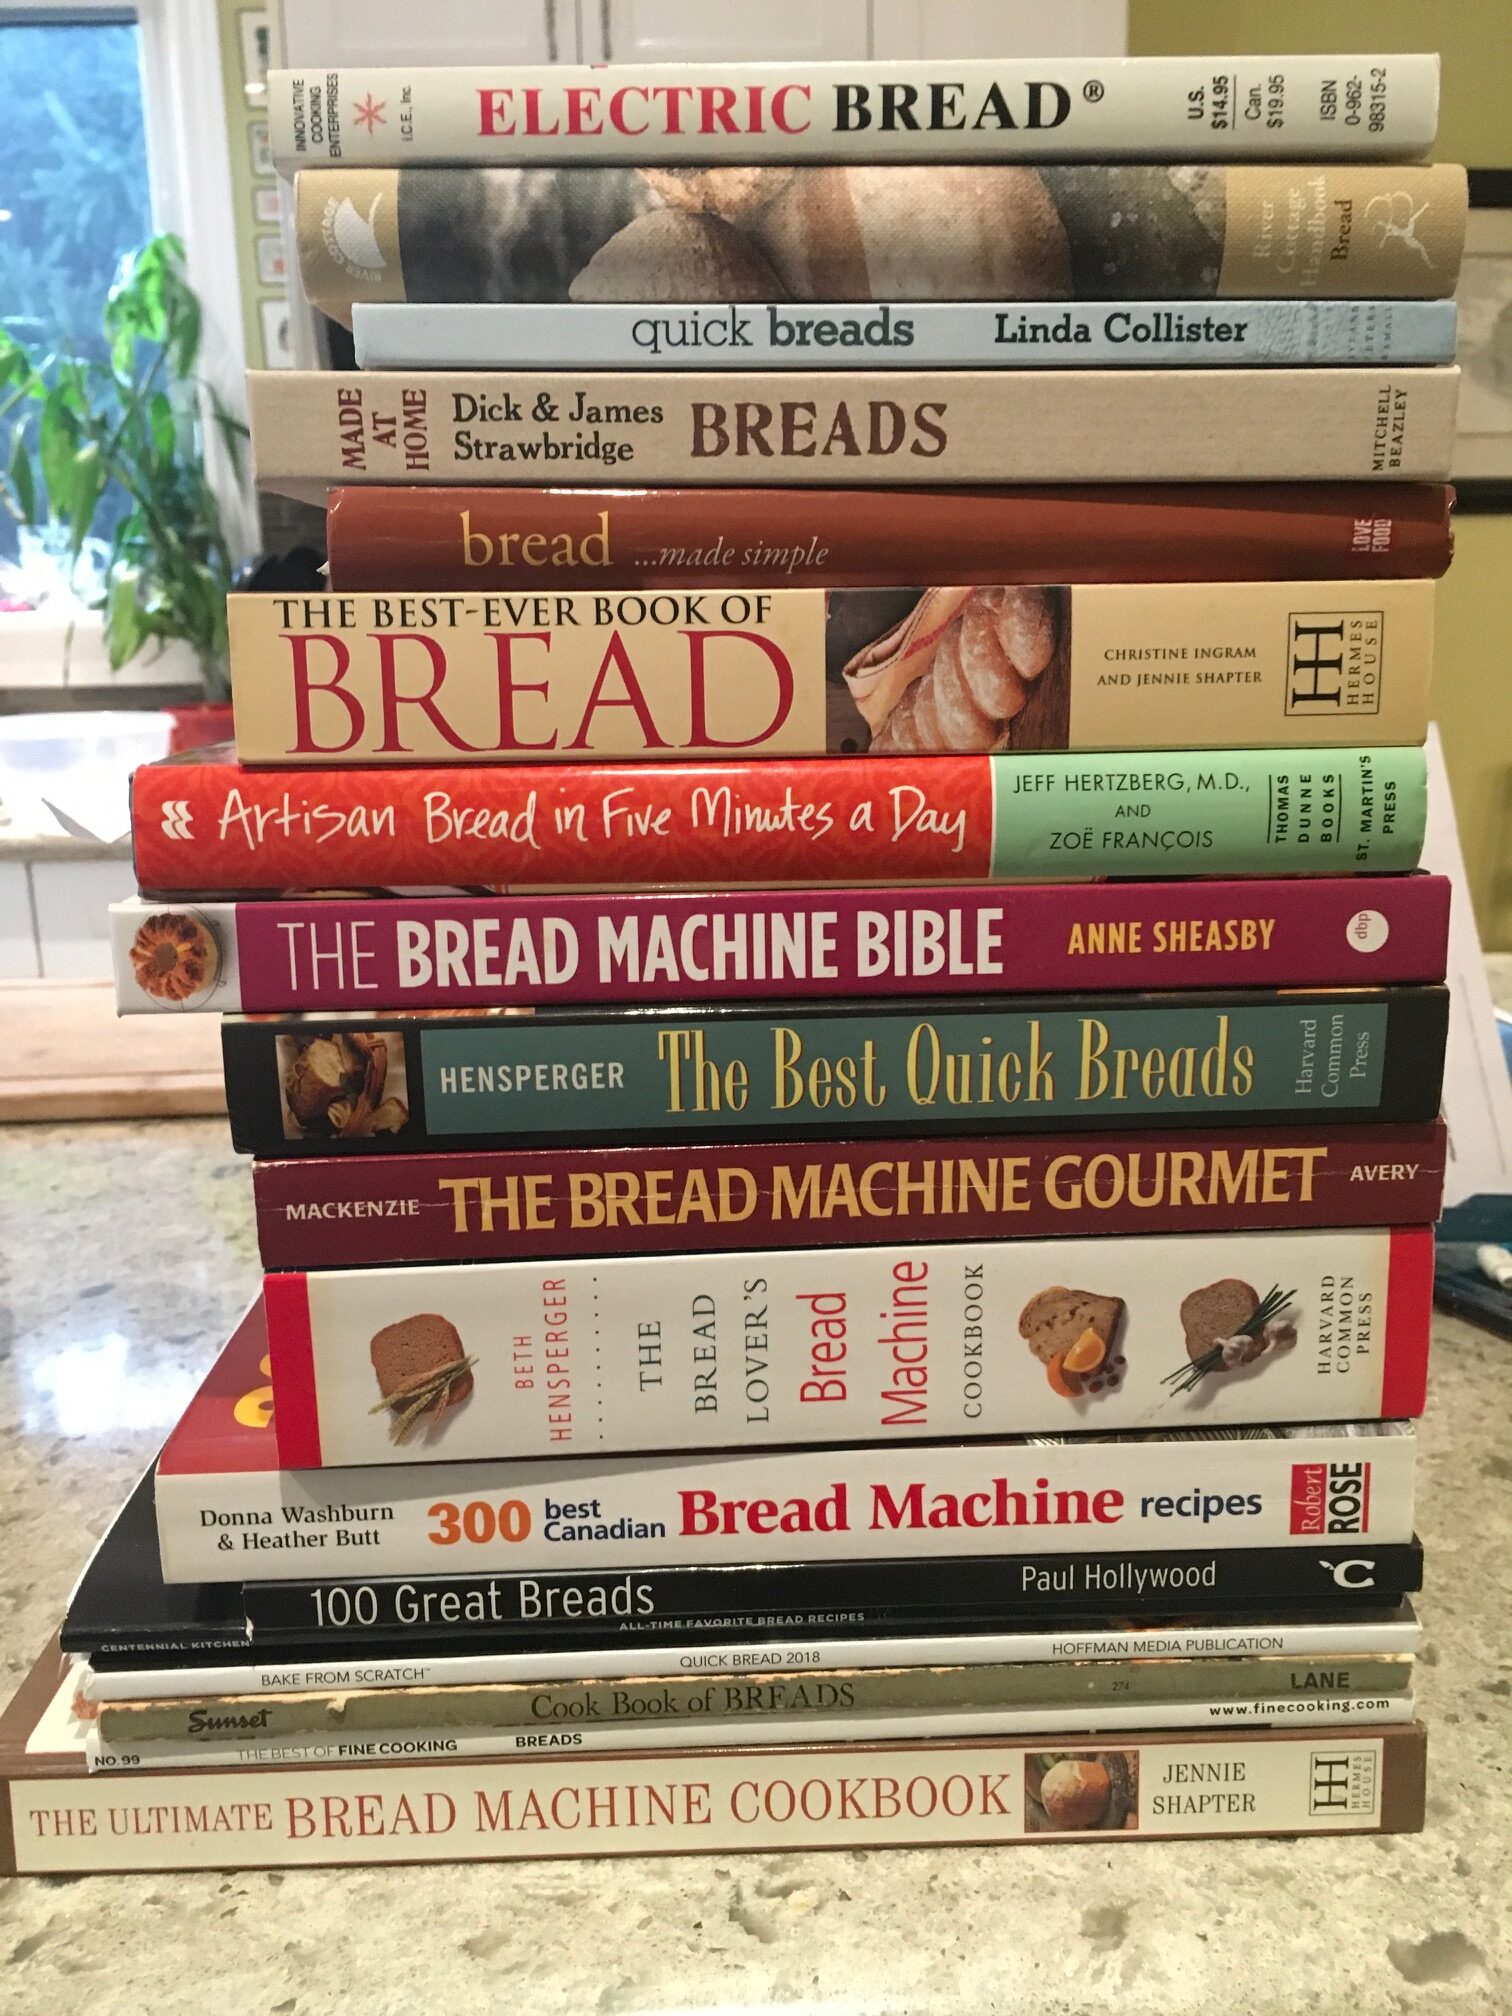 Even more bread books!